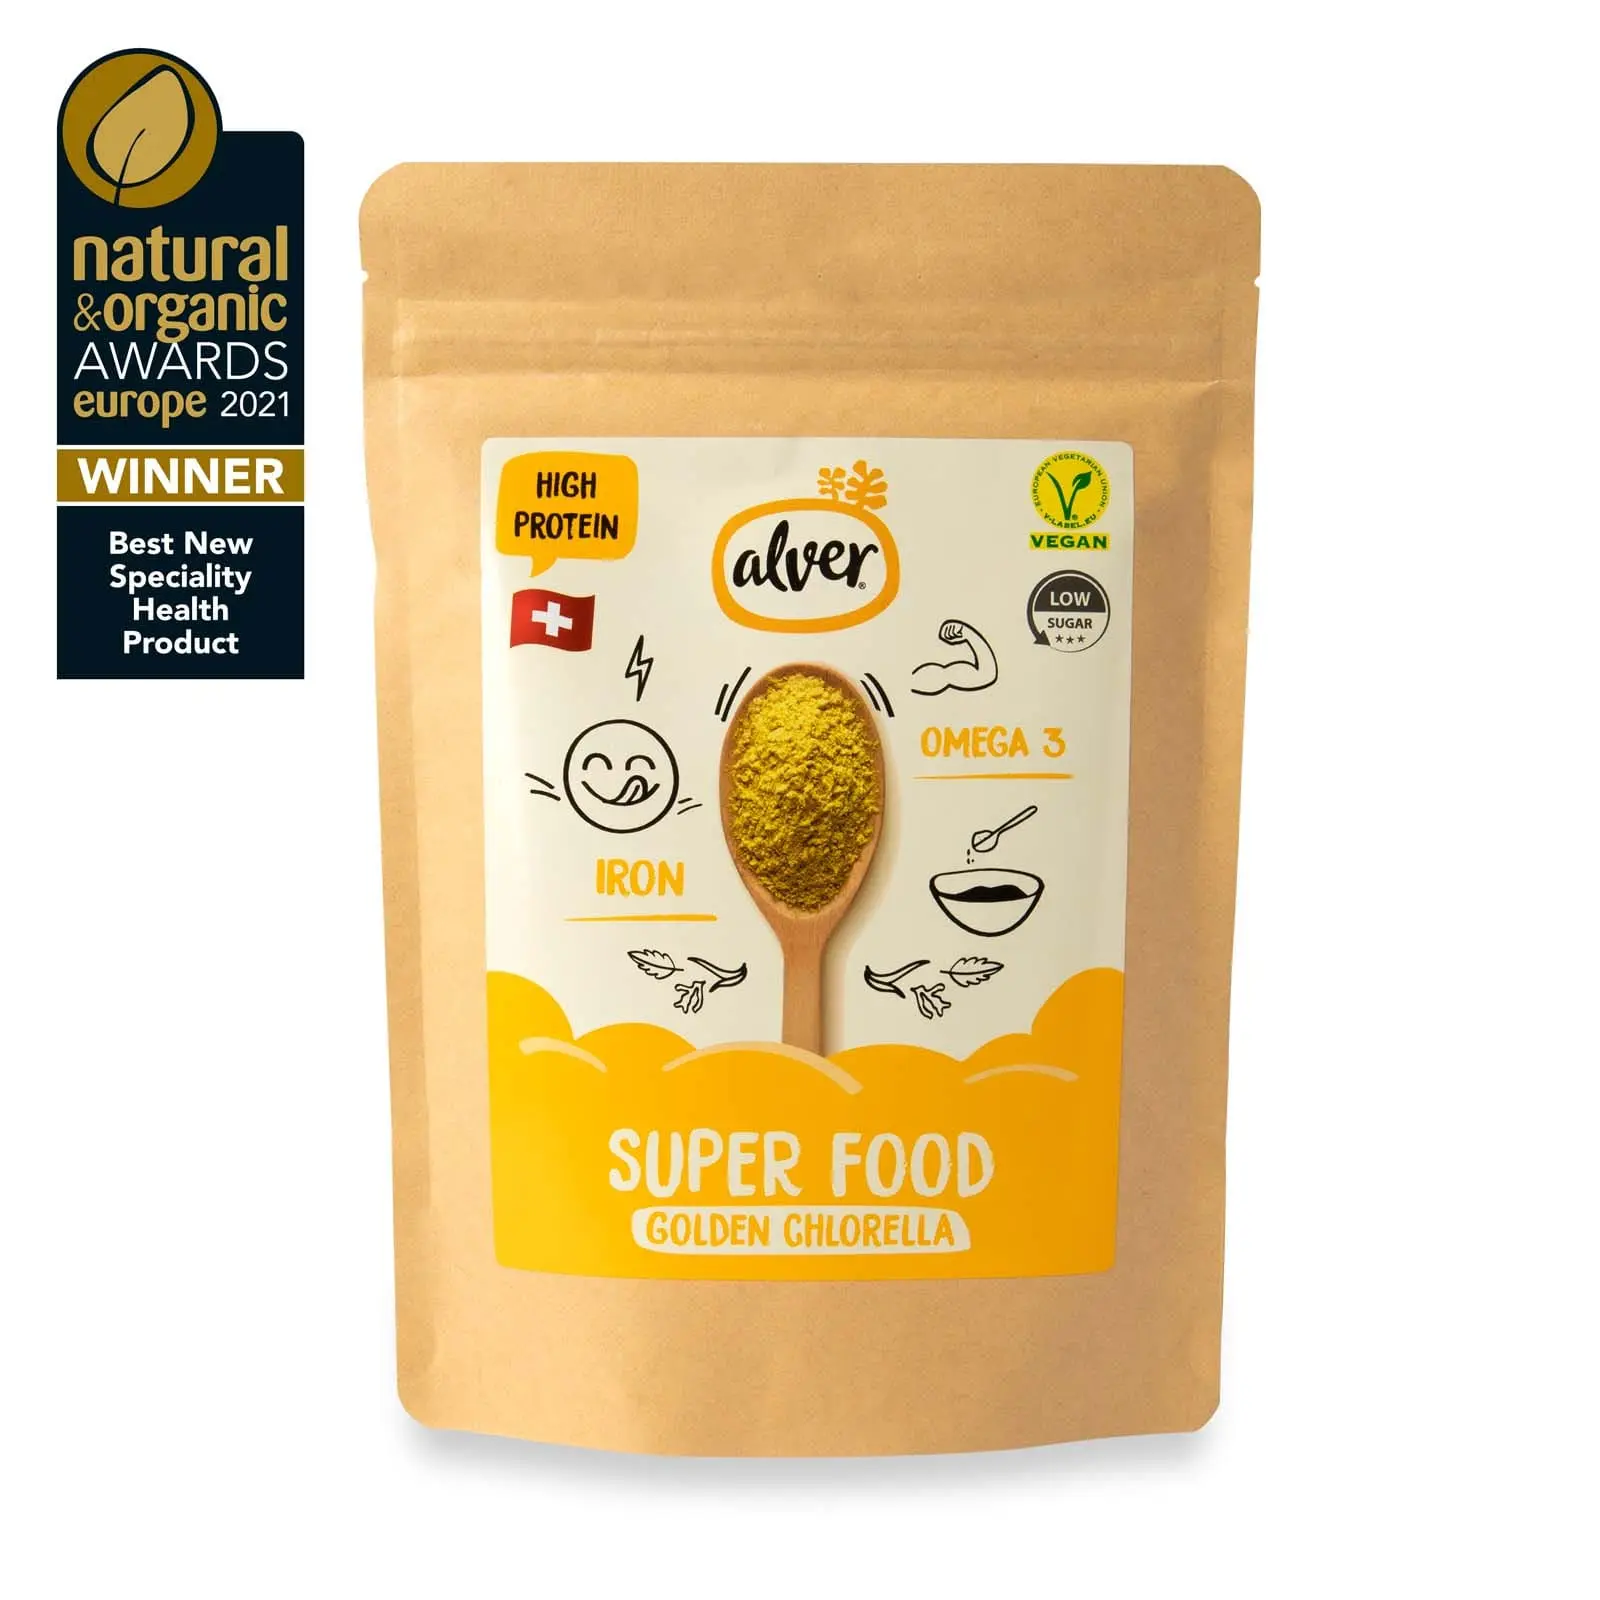 Alver Golden Chlorella baltymų milteliai su vitaminais ir mineralais tinka veganams 35 proc augalinių baltymų Natural & Organic